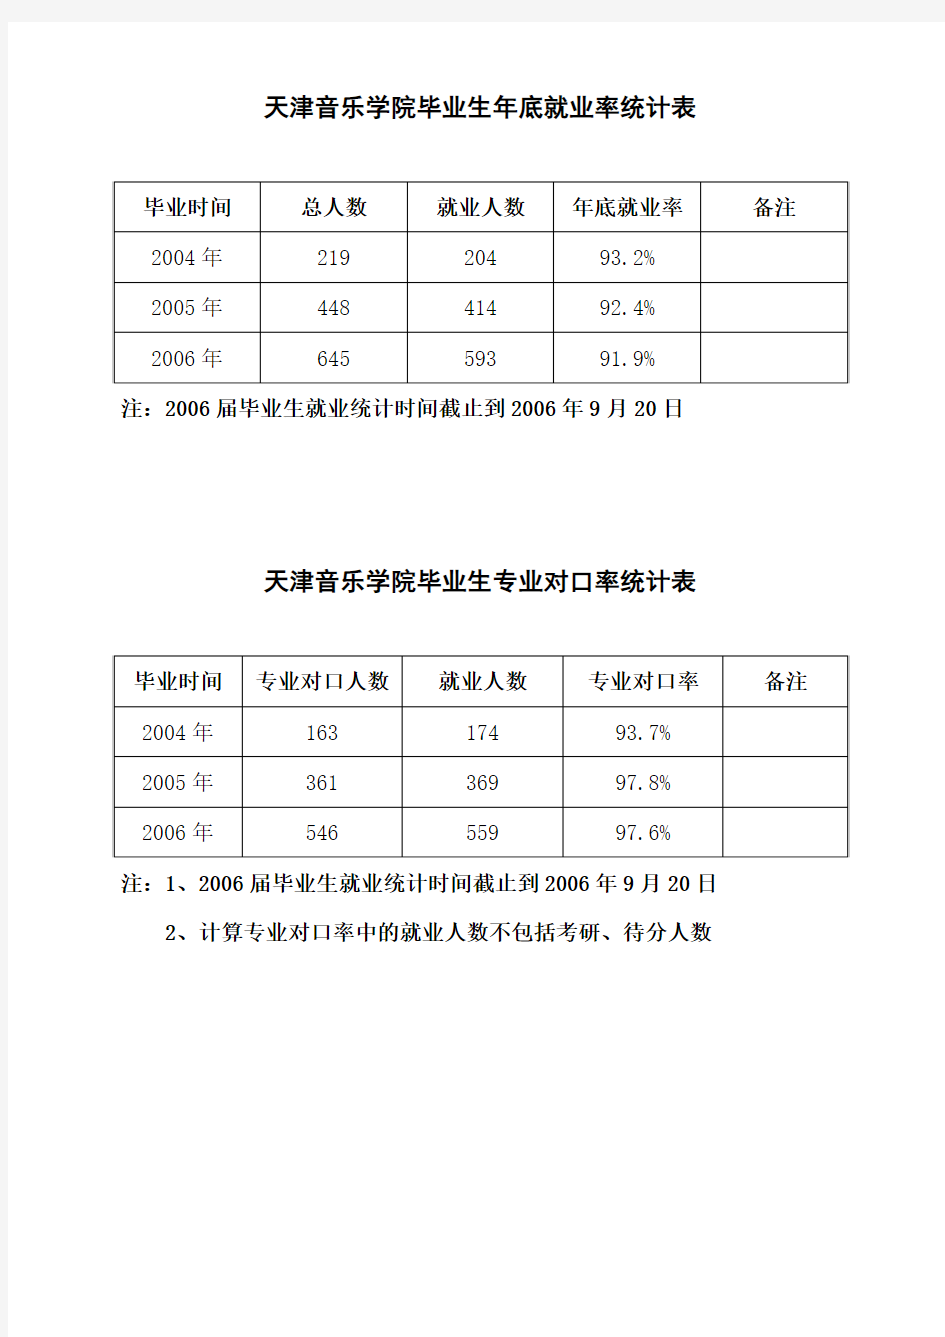 天津音乐学院毕业生年底就业率统计表